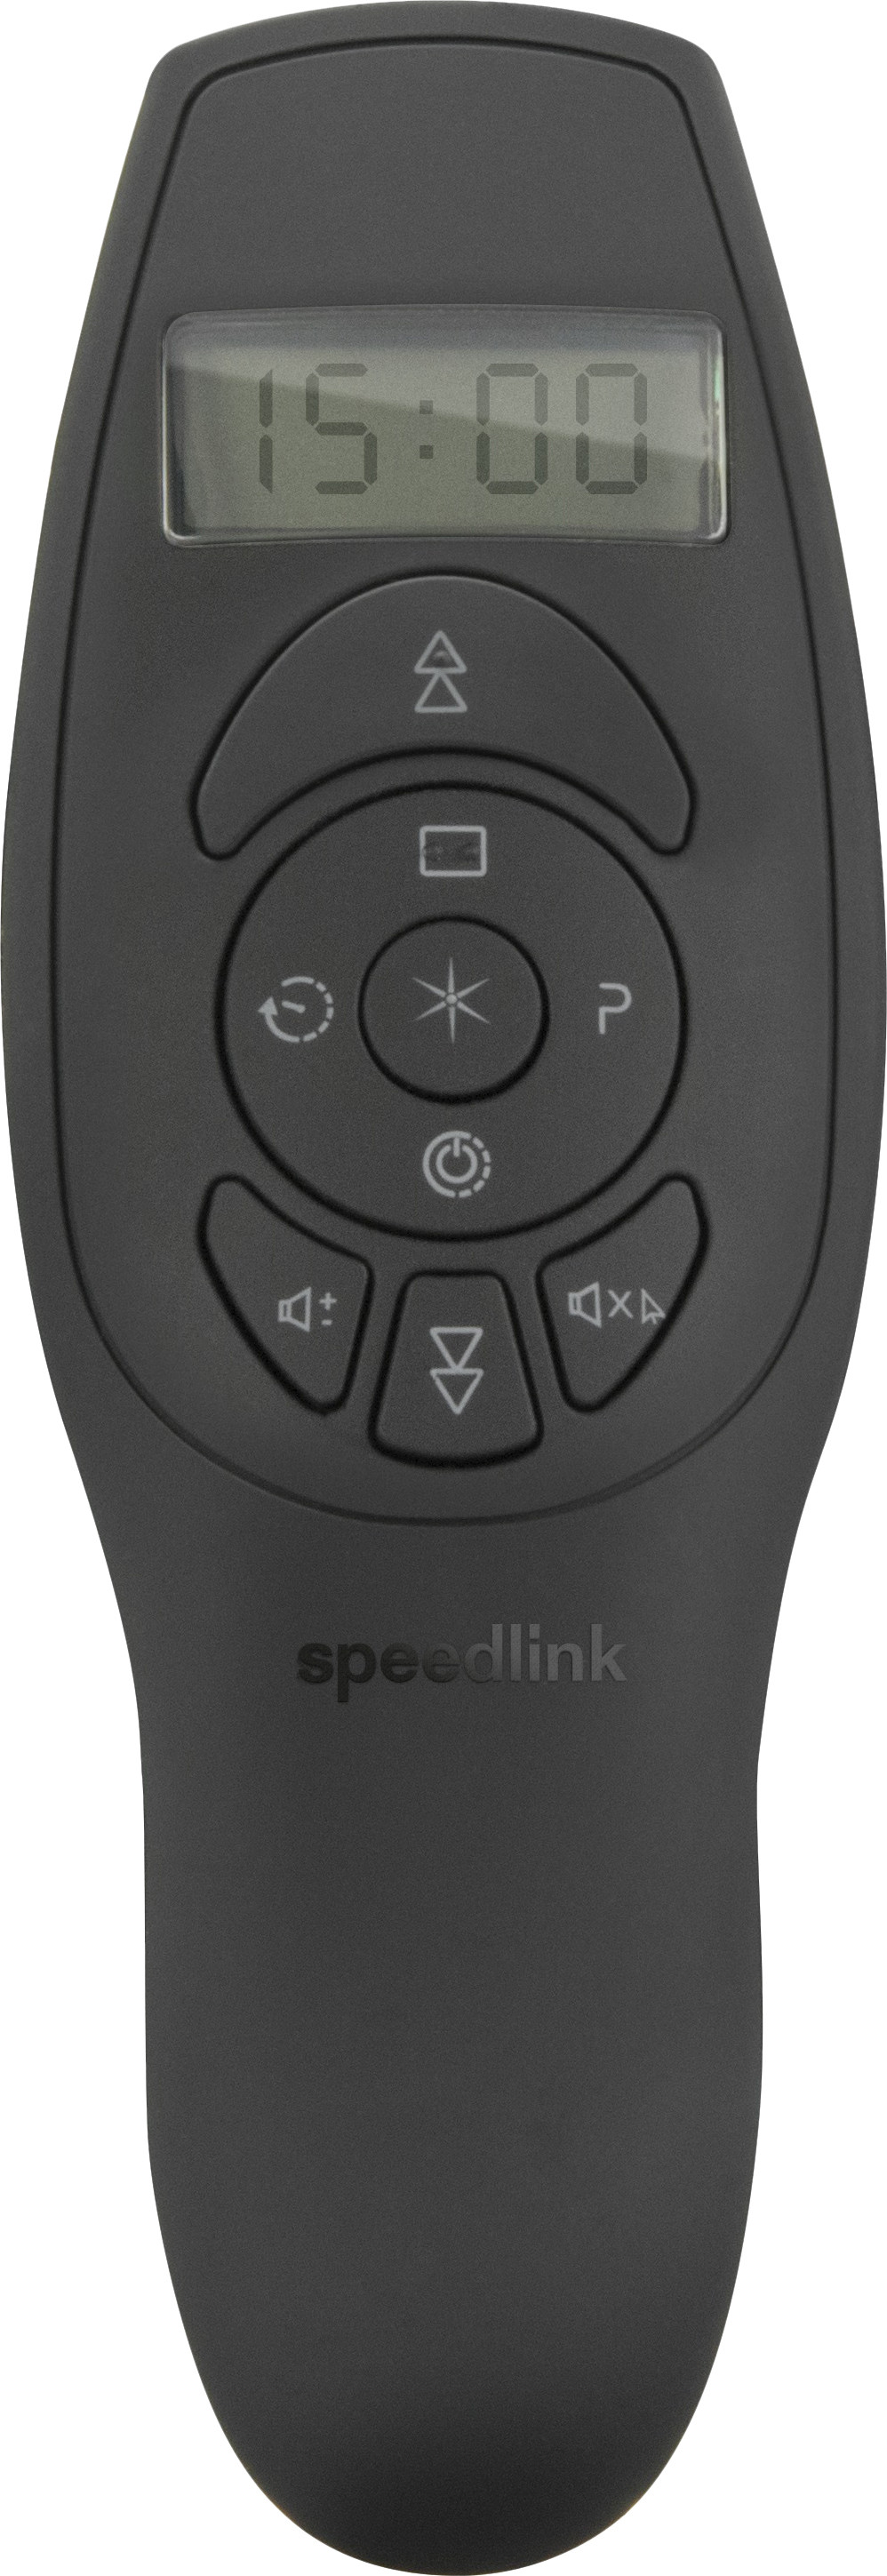 Speedlink esitluspult Acute Vibe (SL-600401-BK)